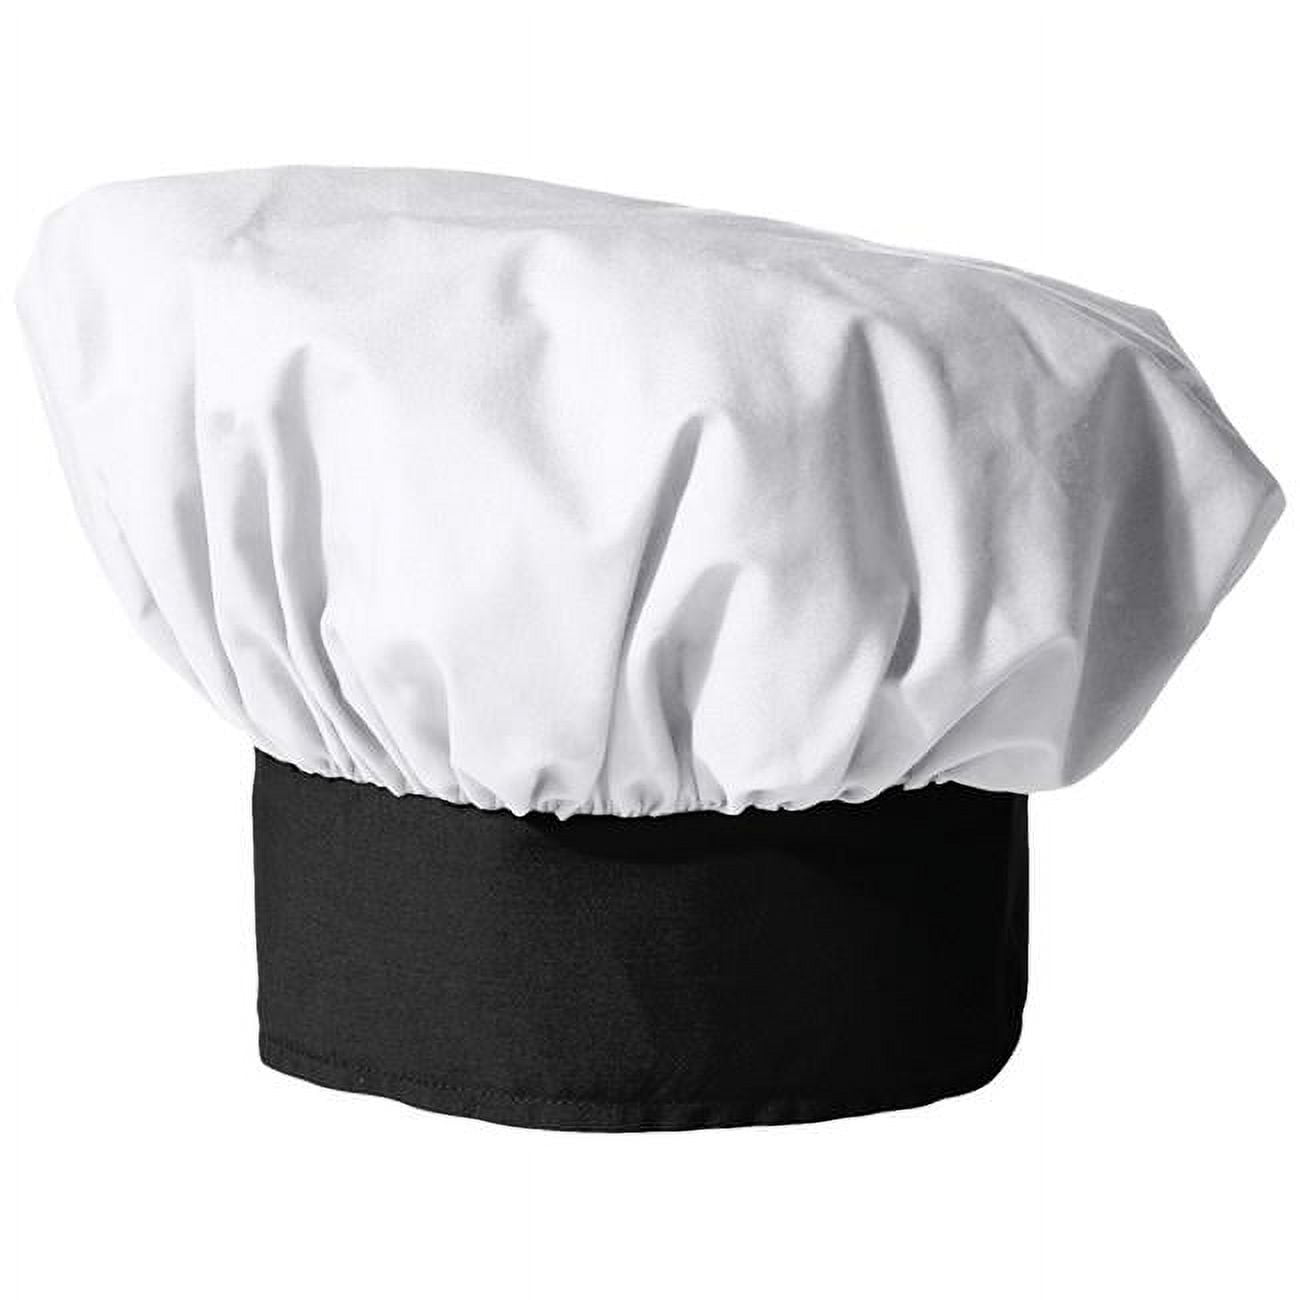 Chef Hat Poplin in White/Black 